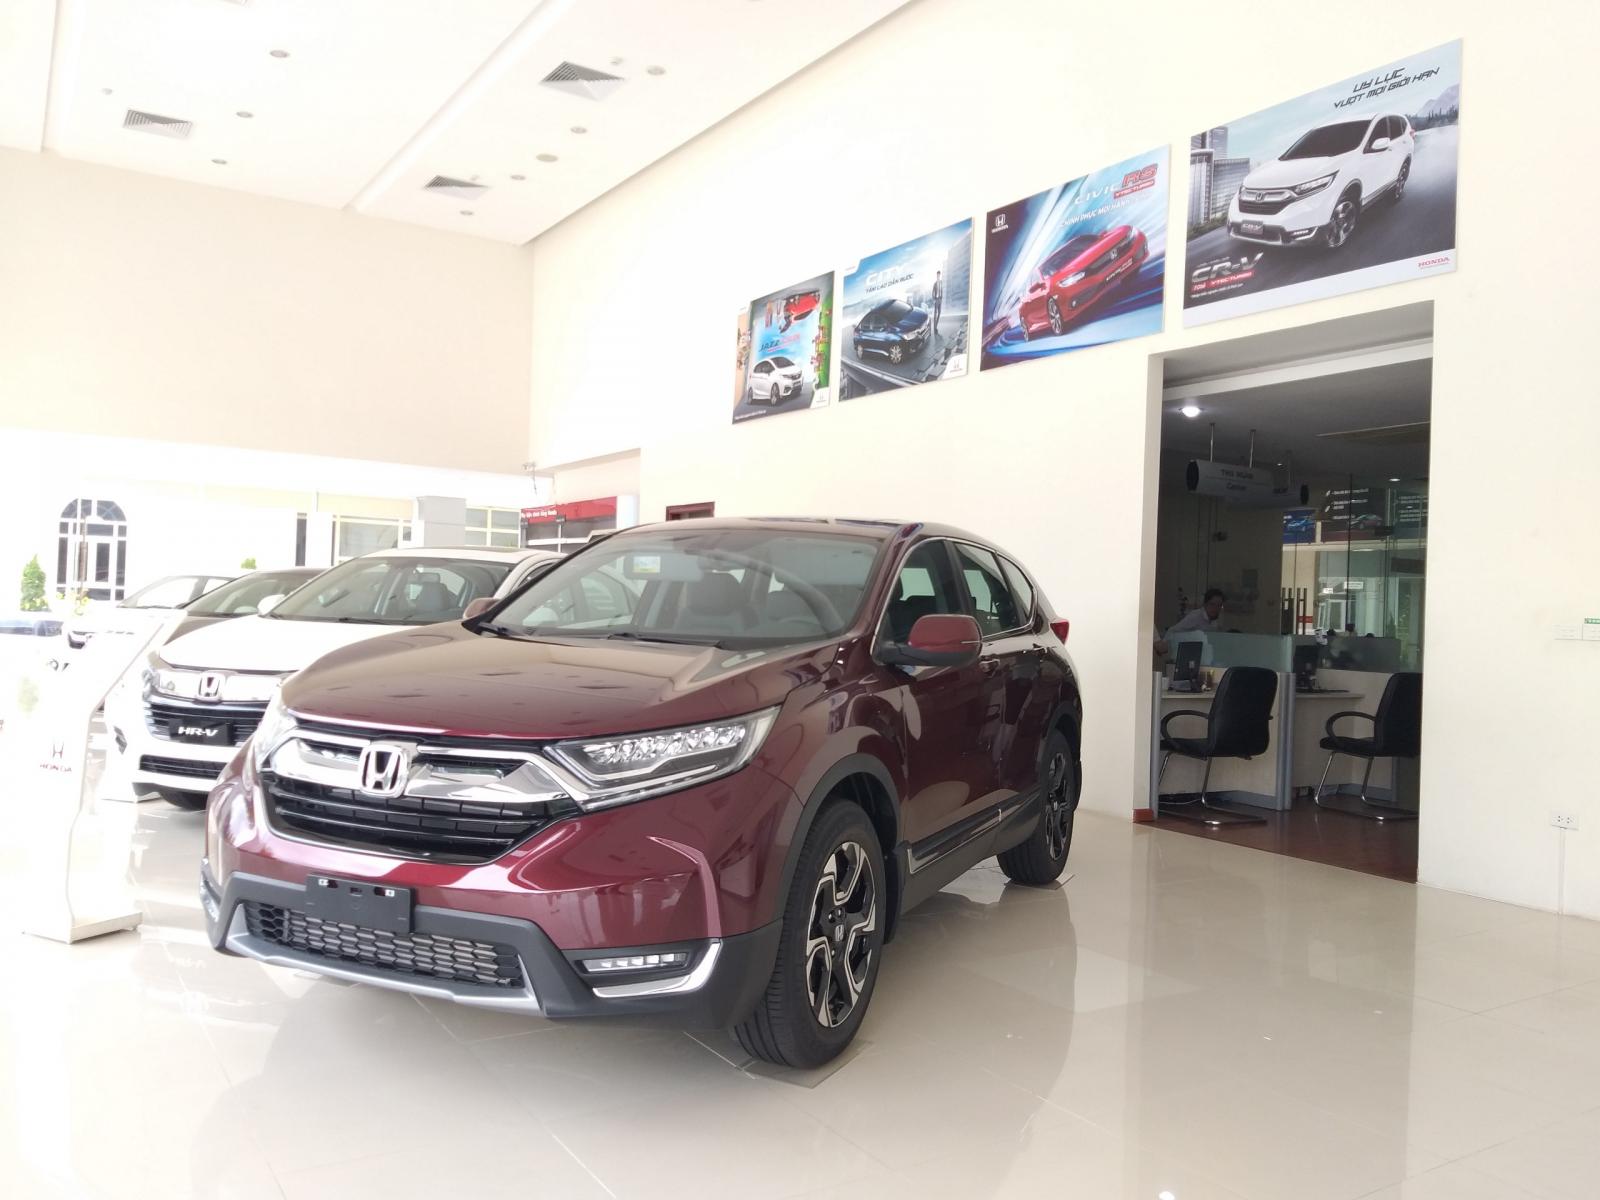 Giao ngay Honda CR-V 1.5 L, màu đỏ, đời 2019, giảm giá sốc khi mua xe tại Honda Ôtô Thanh Hóa, LH: 0962028368-2